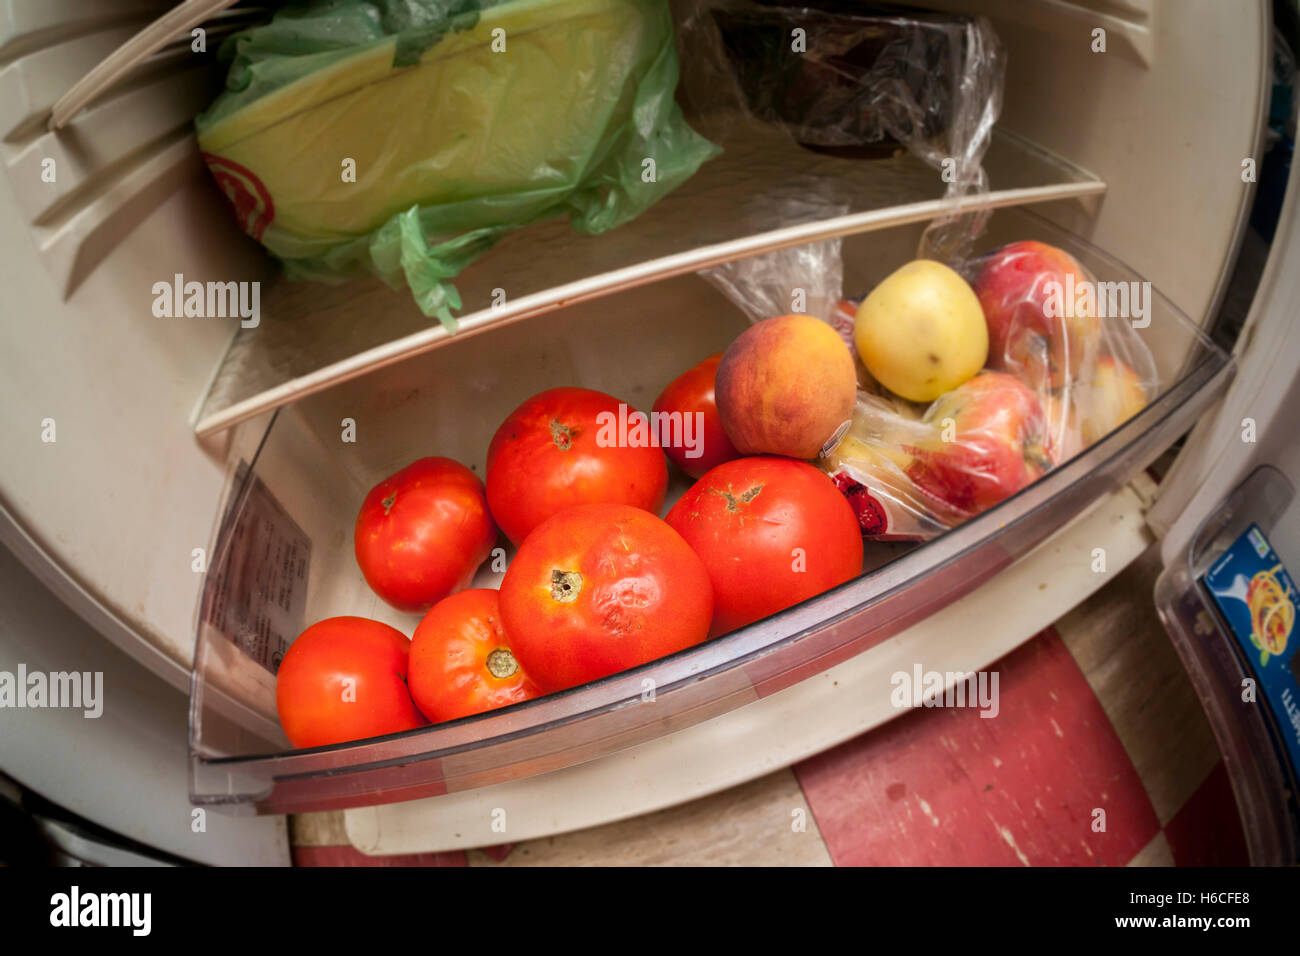 Tomaten im Kühlschrank in New York auf Mittwoch, 19. Oktober 2016  gespeichert. Eine Studie von der University of Florida gefunden, dass das  alte Sprichwort halten Ihre Tomaten aus dem Kühlschrank richtig ist.